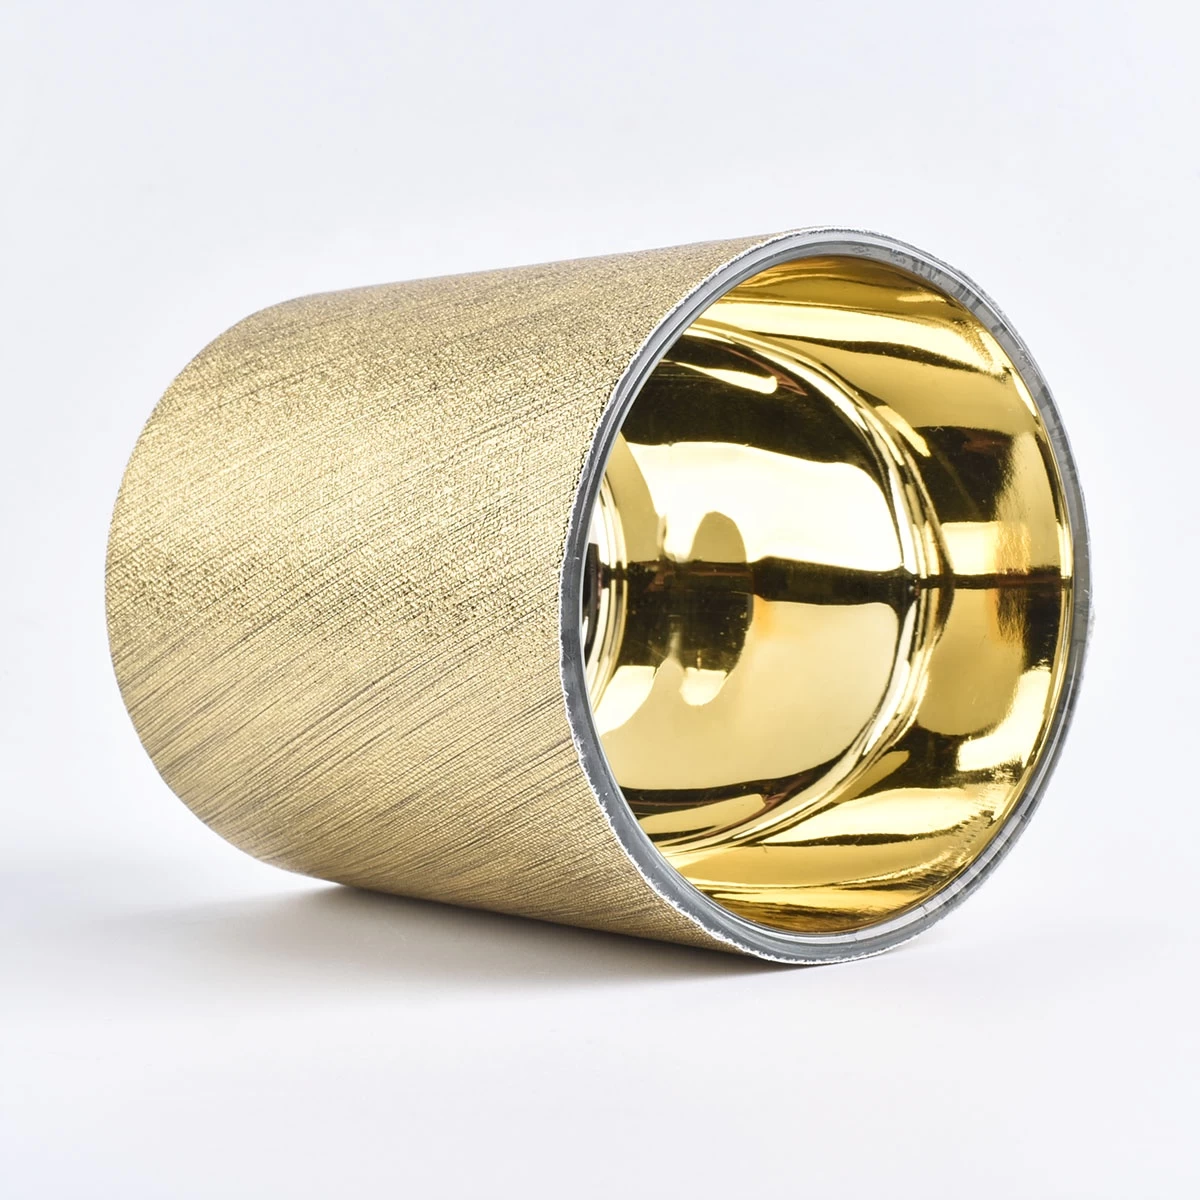 Bulk cylinder golden PU leather candle holder jars 10oz 12oz